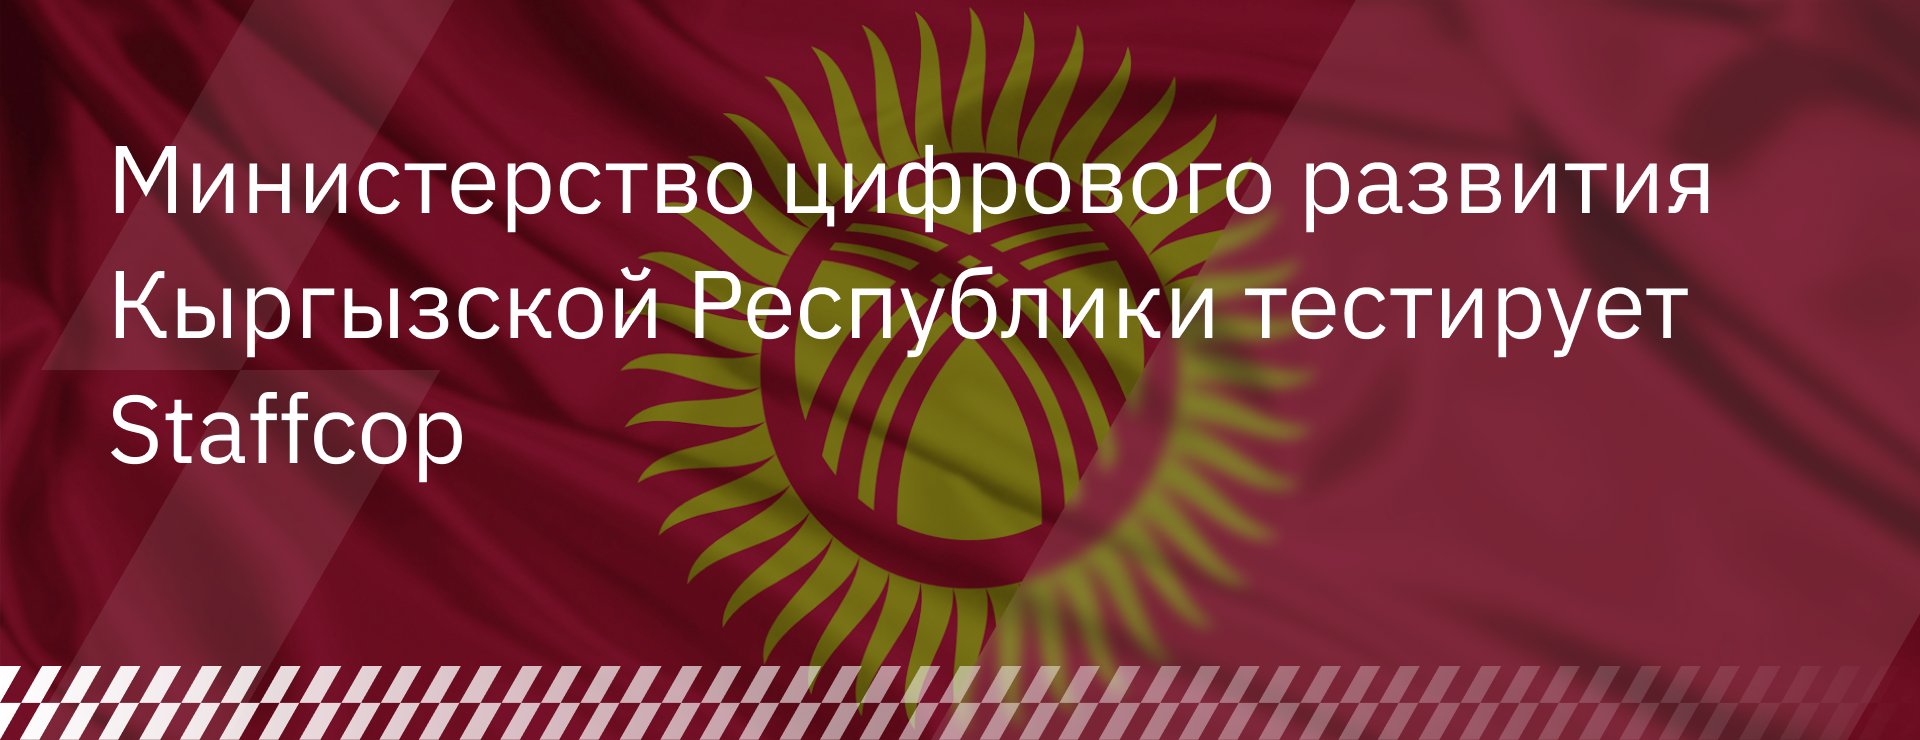 Министерство цифрового развития Кыргызской Республики тестирует Staffcop